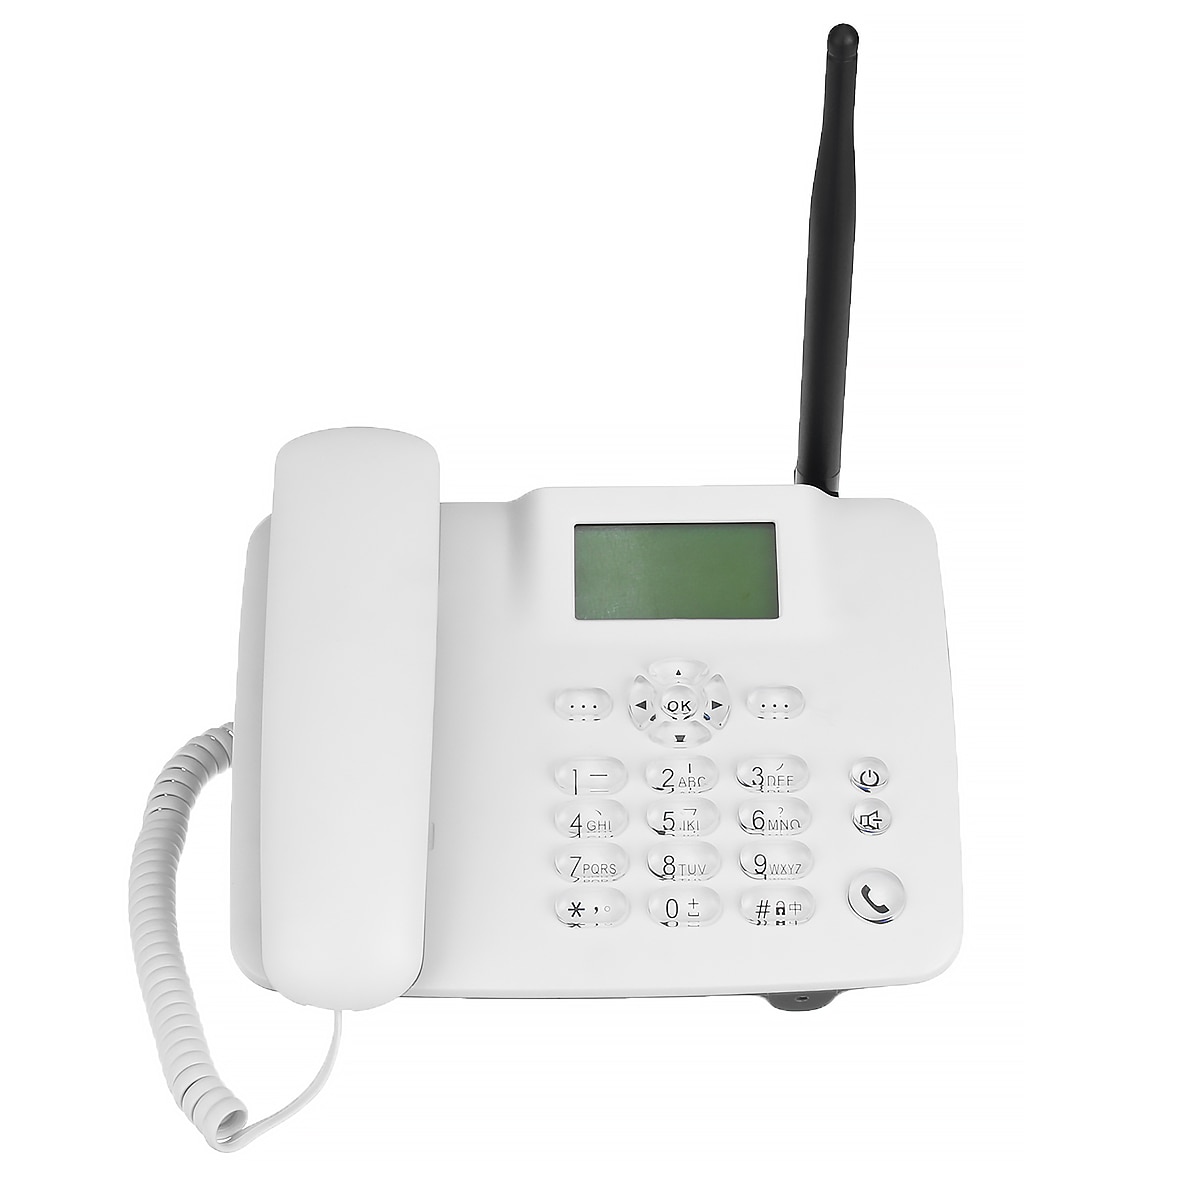 3g 2g gsm fast trådlös telefon skrivbord mobiltelefon lcd skärm sim -kort skrivbord antenn gränssnitt inkommande samtal display 100-240v